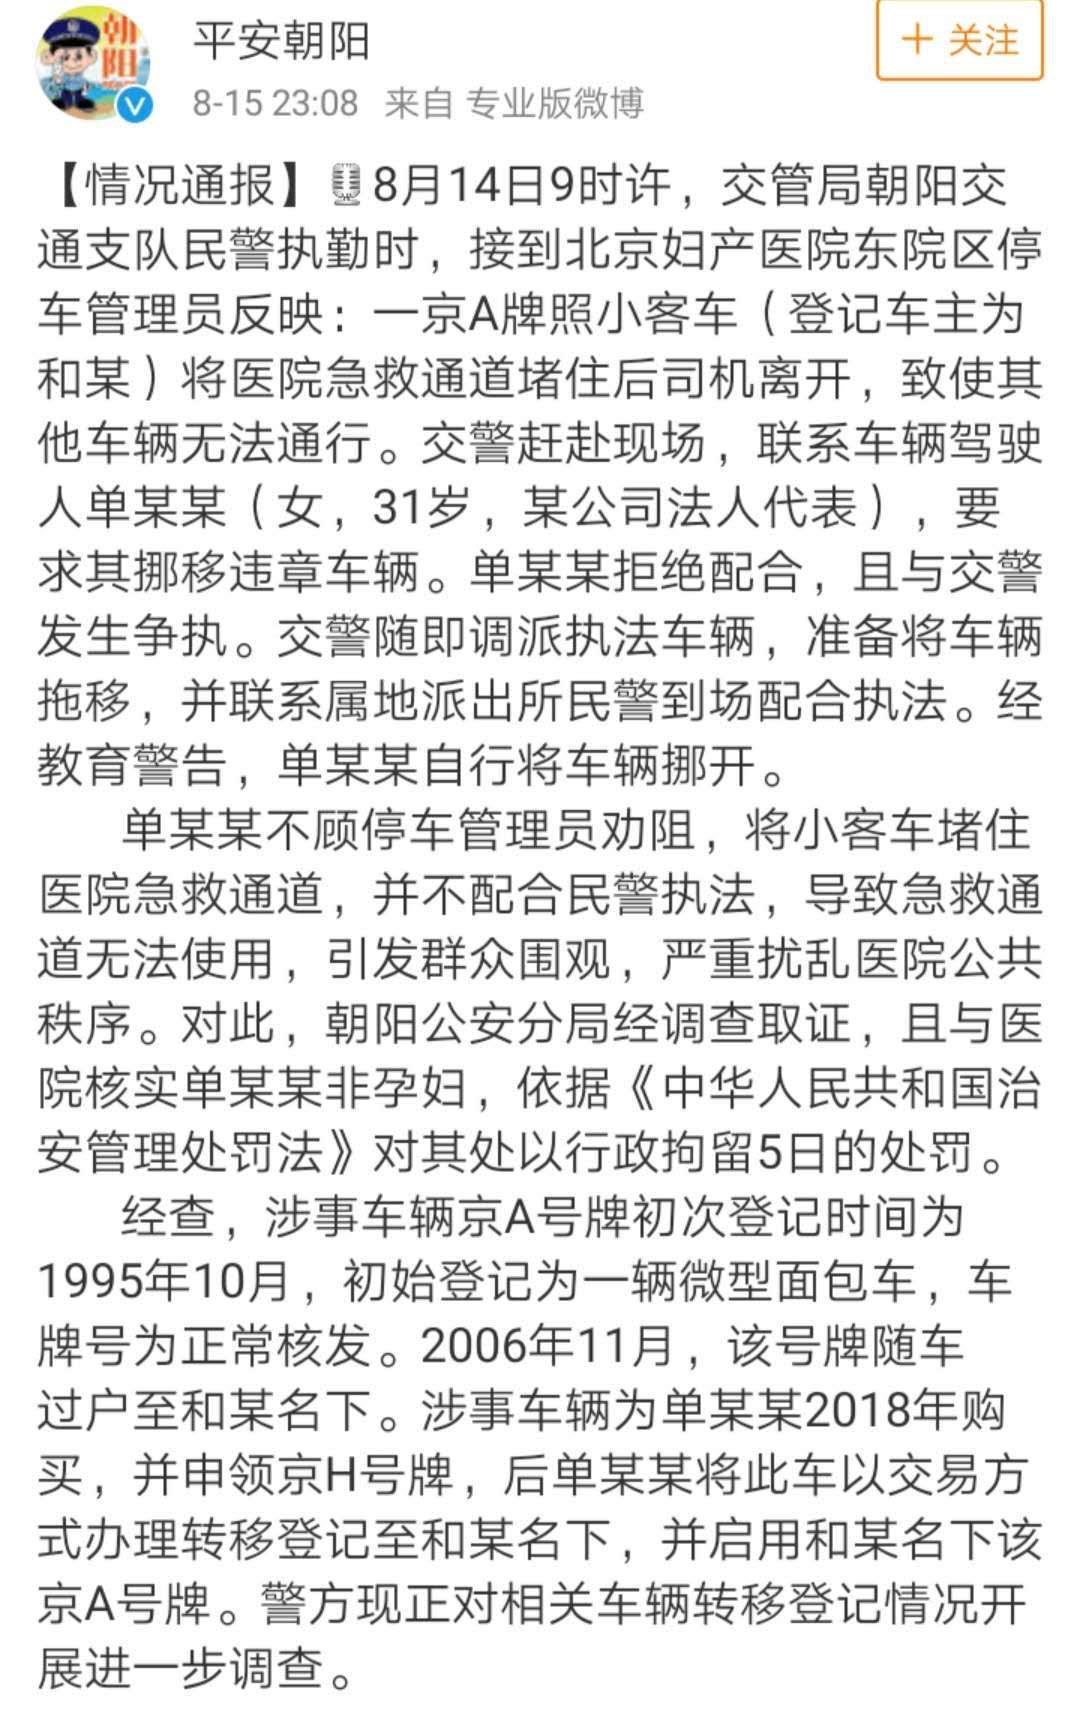 早财经丨新闻联播7篇报道聚焦香港；北京开劳斯